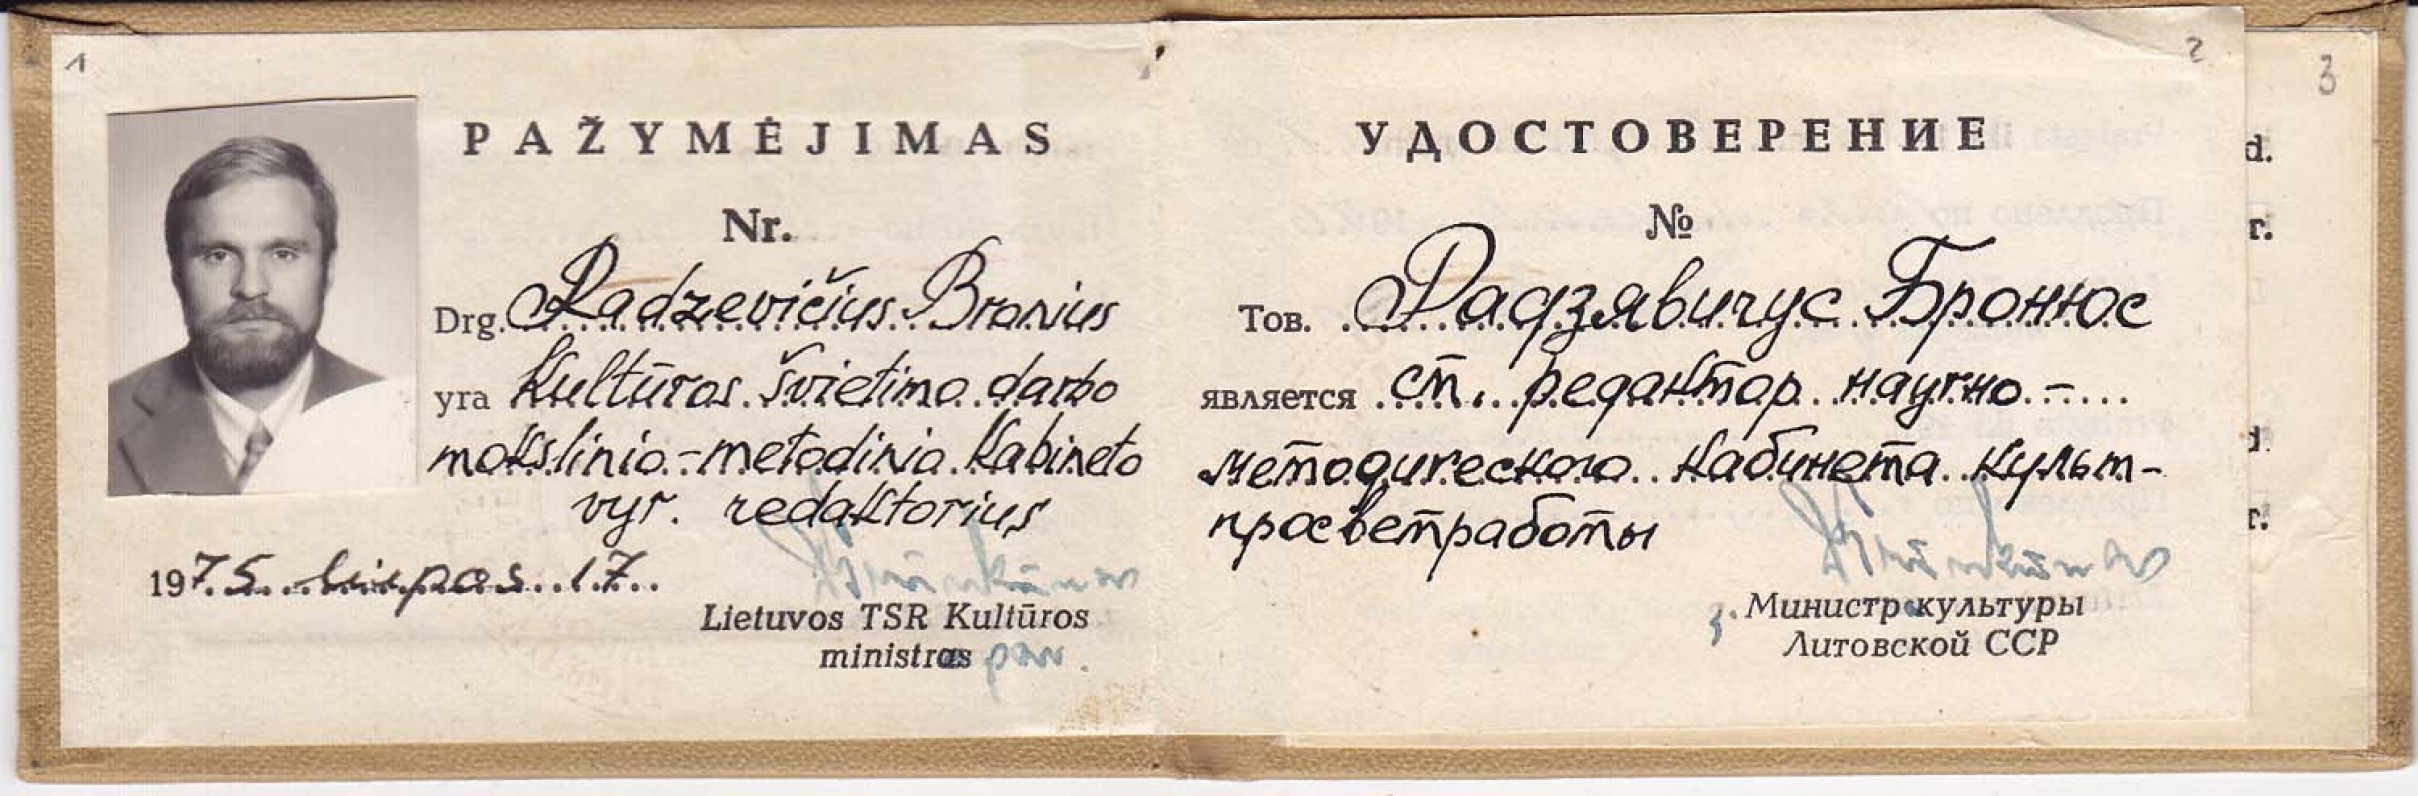 B. Radzevičiaus pažymėjimas. Vilnius, 1975 m. liepos 17 d.